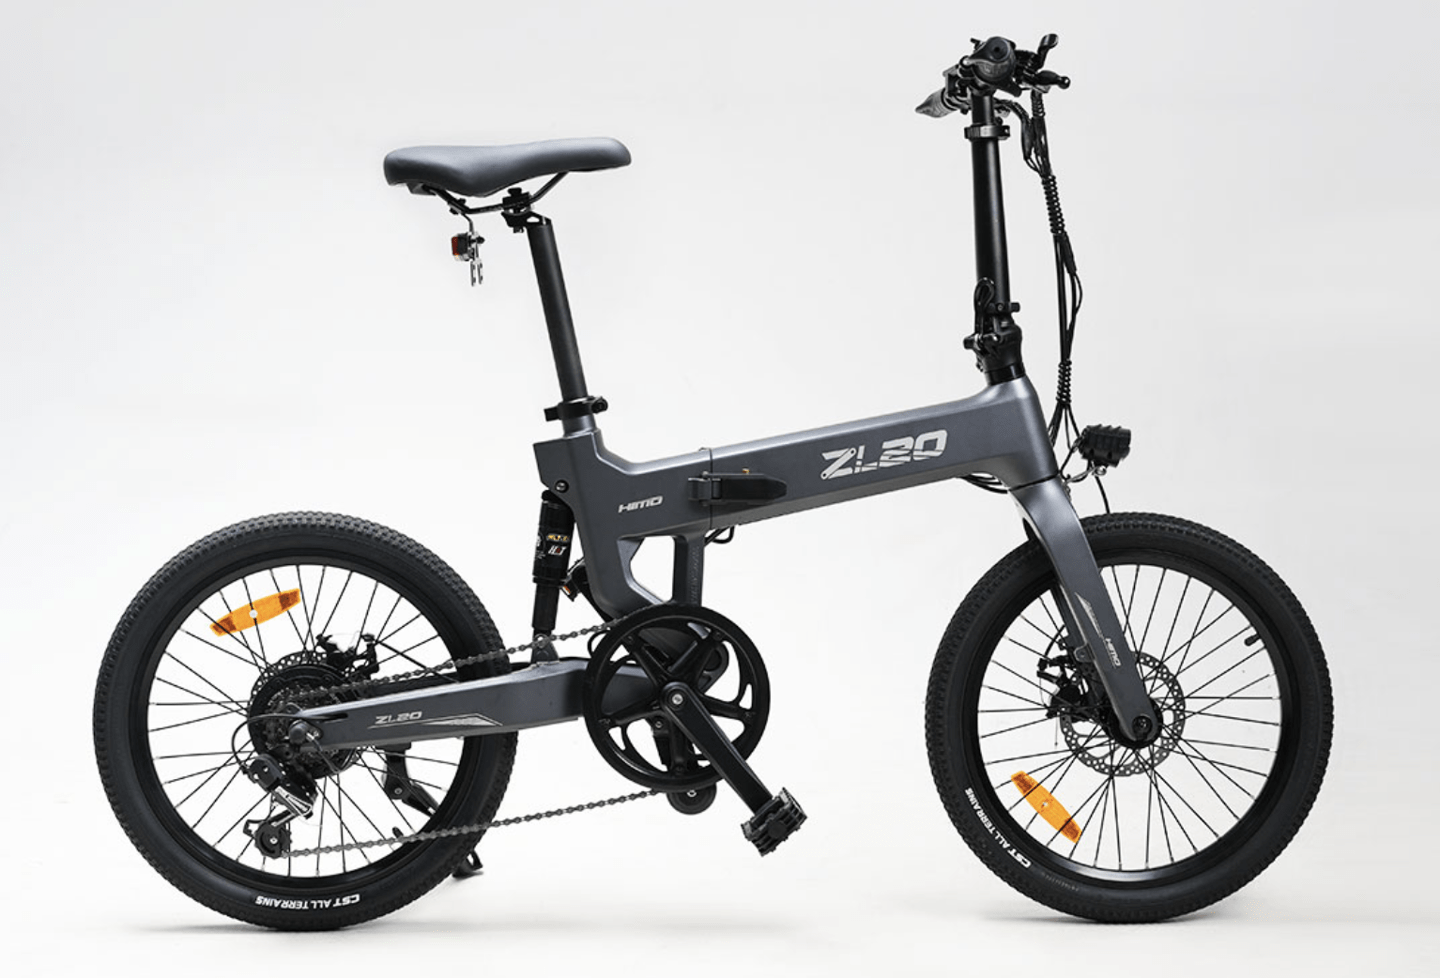 喜摩推出折叠电动自行车ZL20 采用SHIMANO 6速变速系统